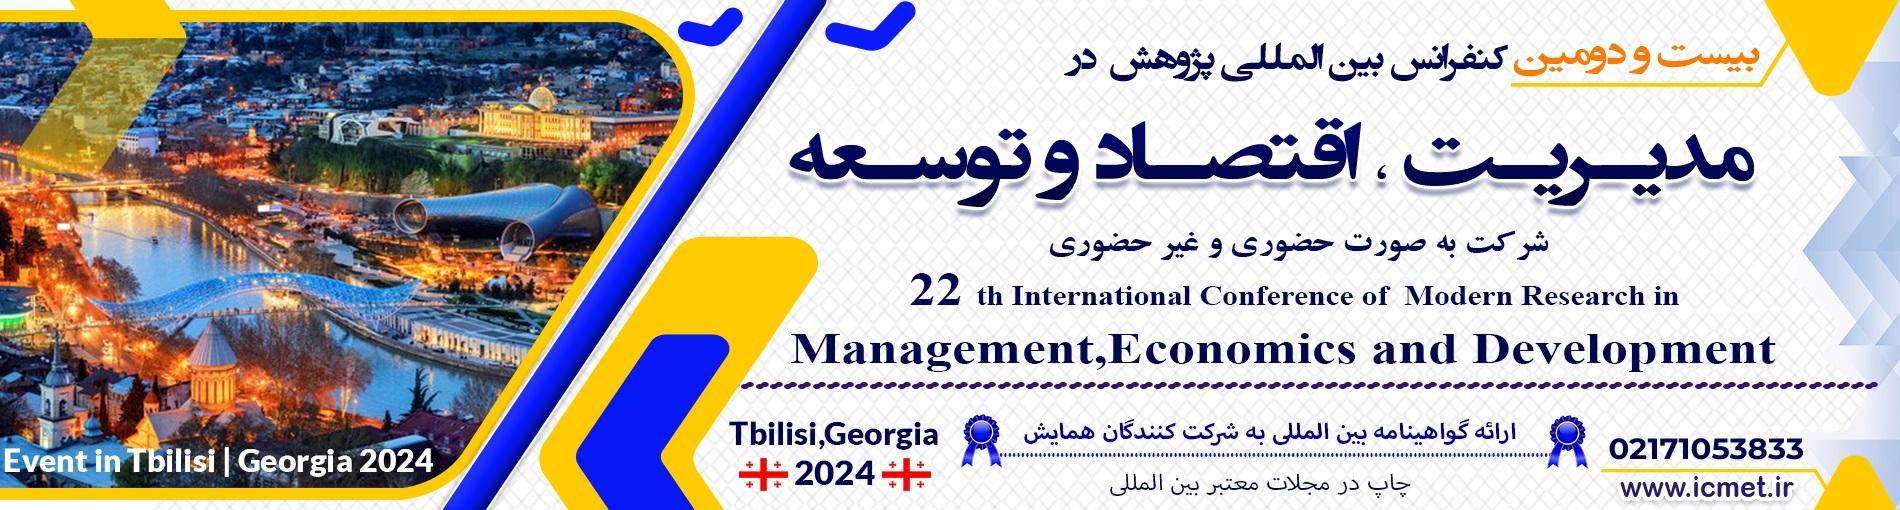 کنفرانس بين المللي مديريت،اقتصاد و توسعه